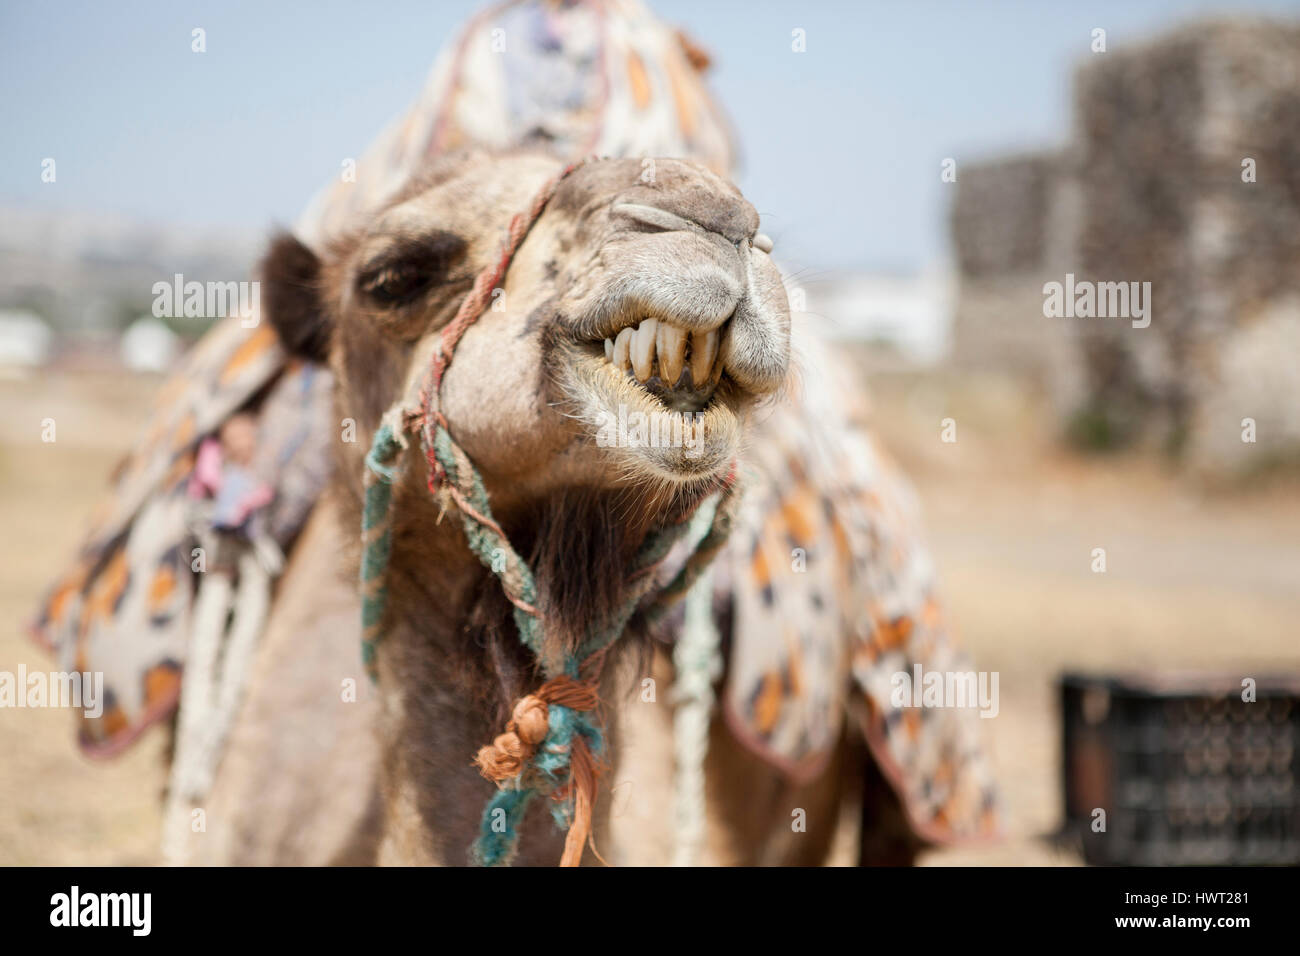 Close-up of camel sur terrain permanent contre le ciel Banque D'Images